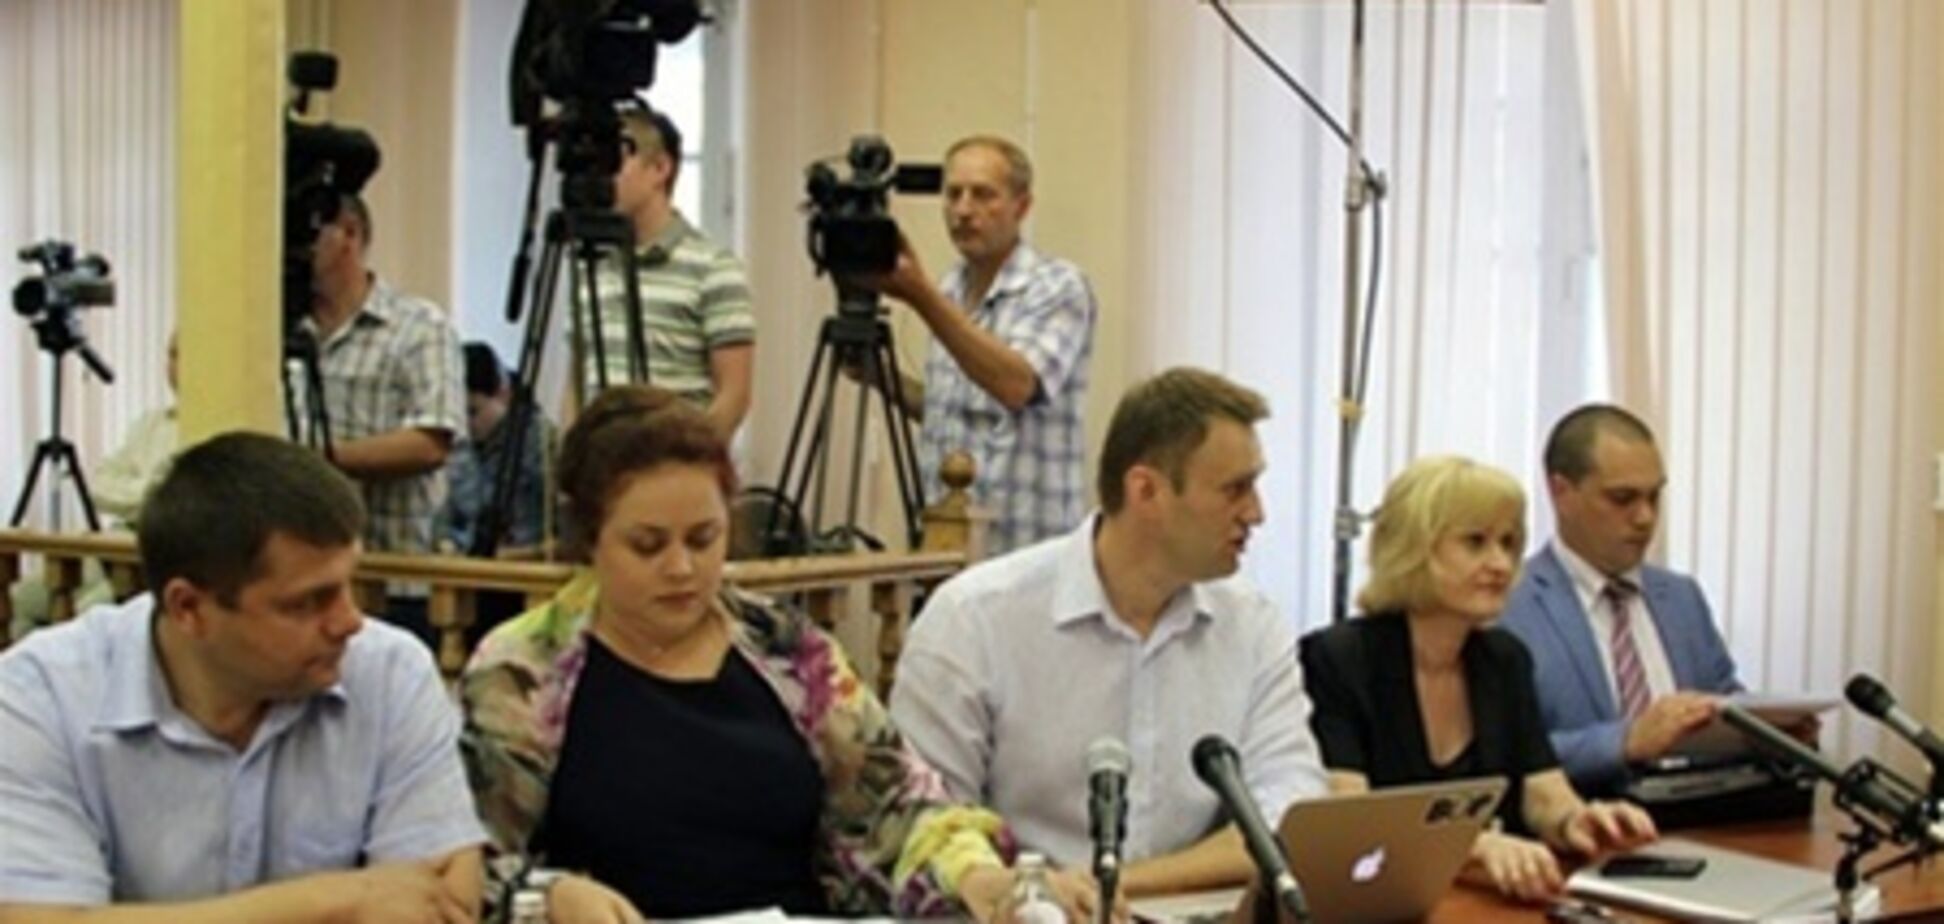 У суда в Кирове заблокировали дорогу для автозака с Навальным